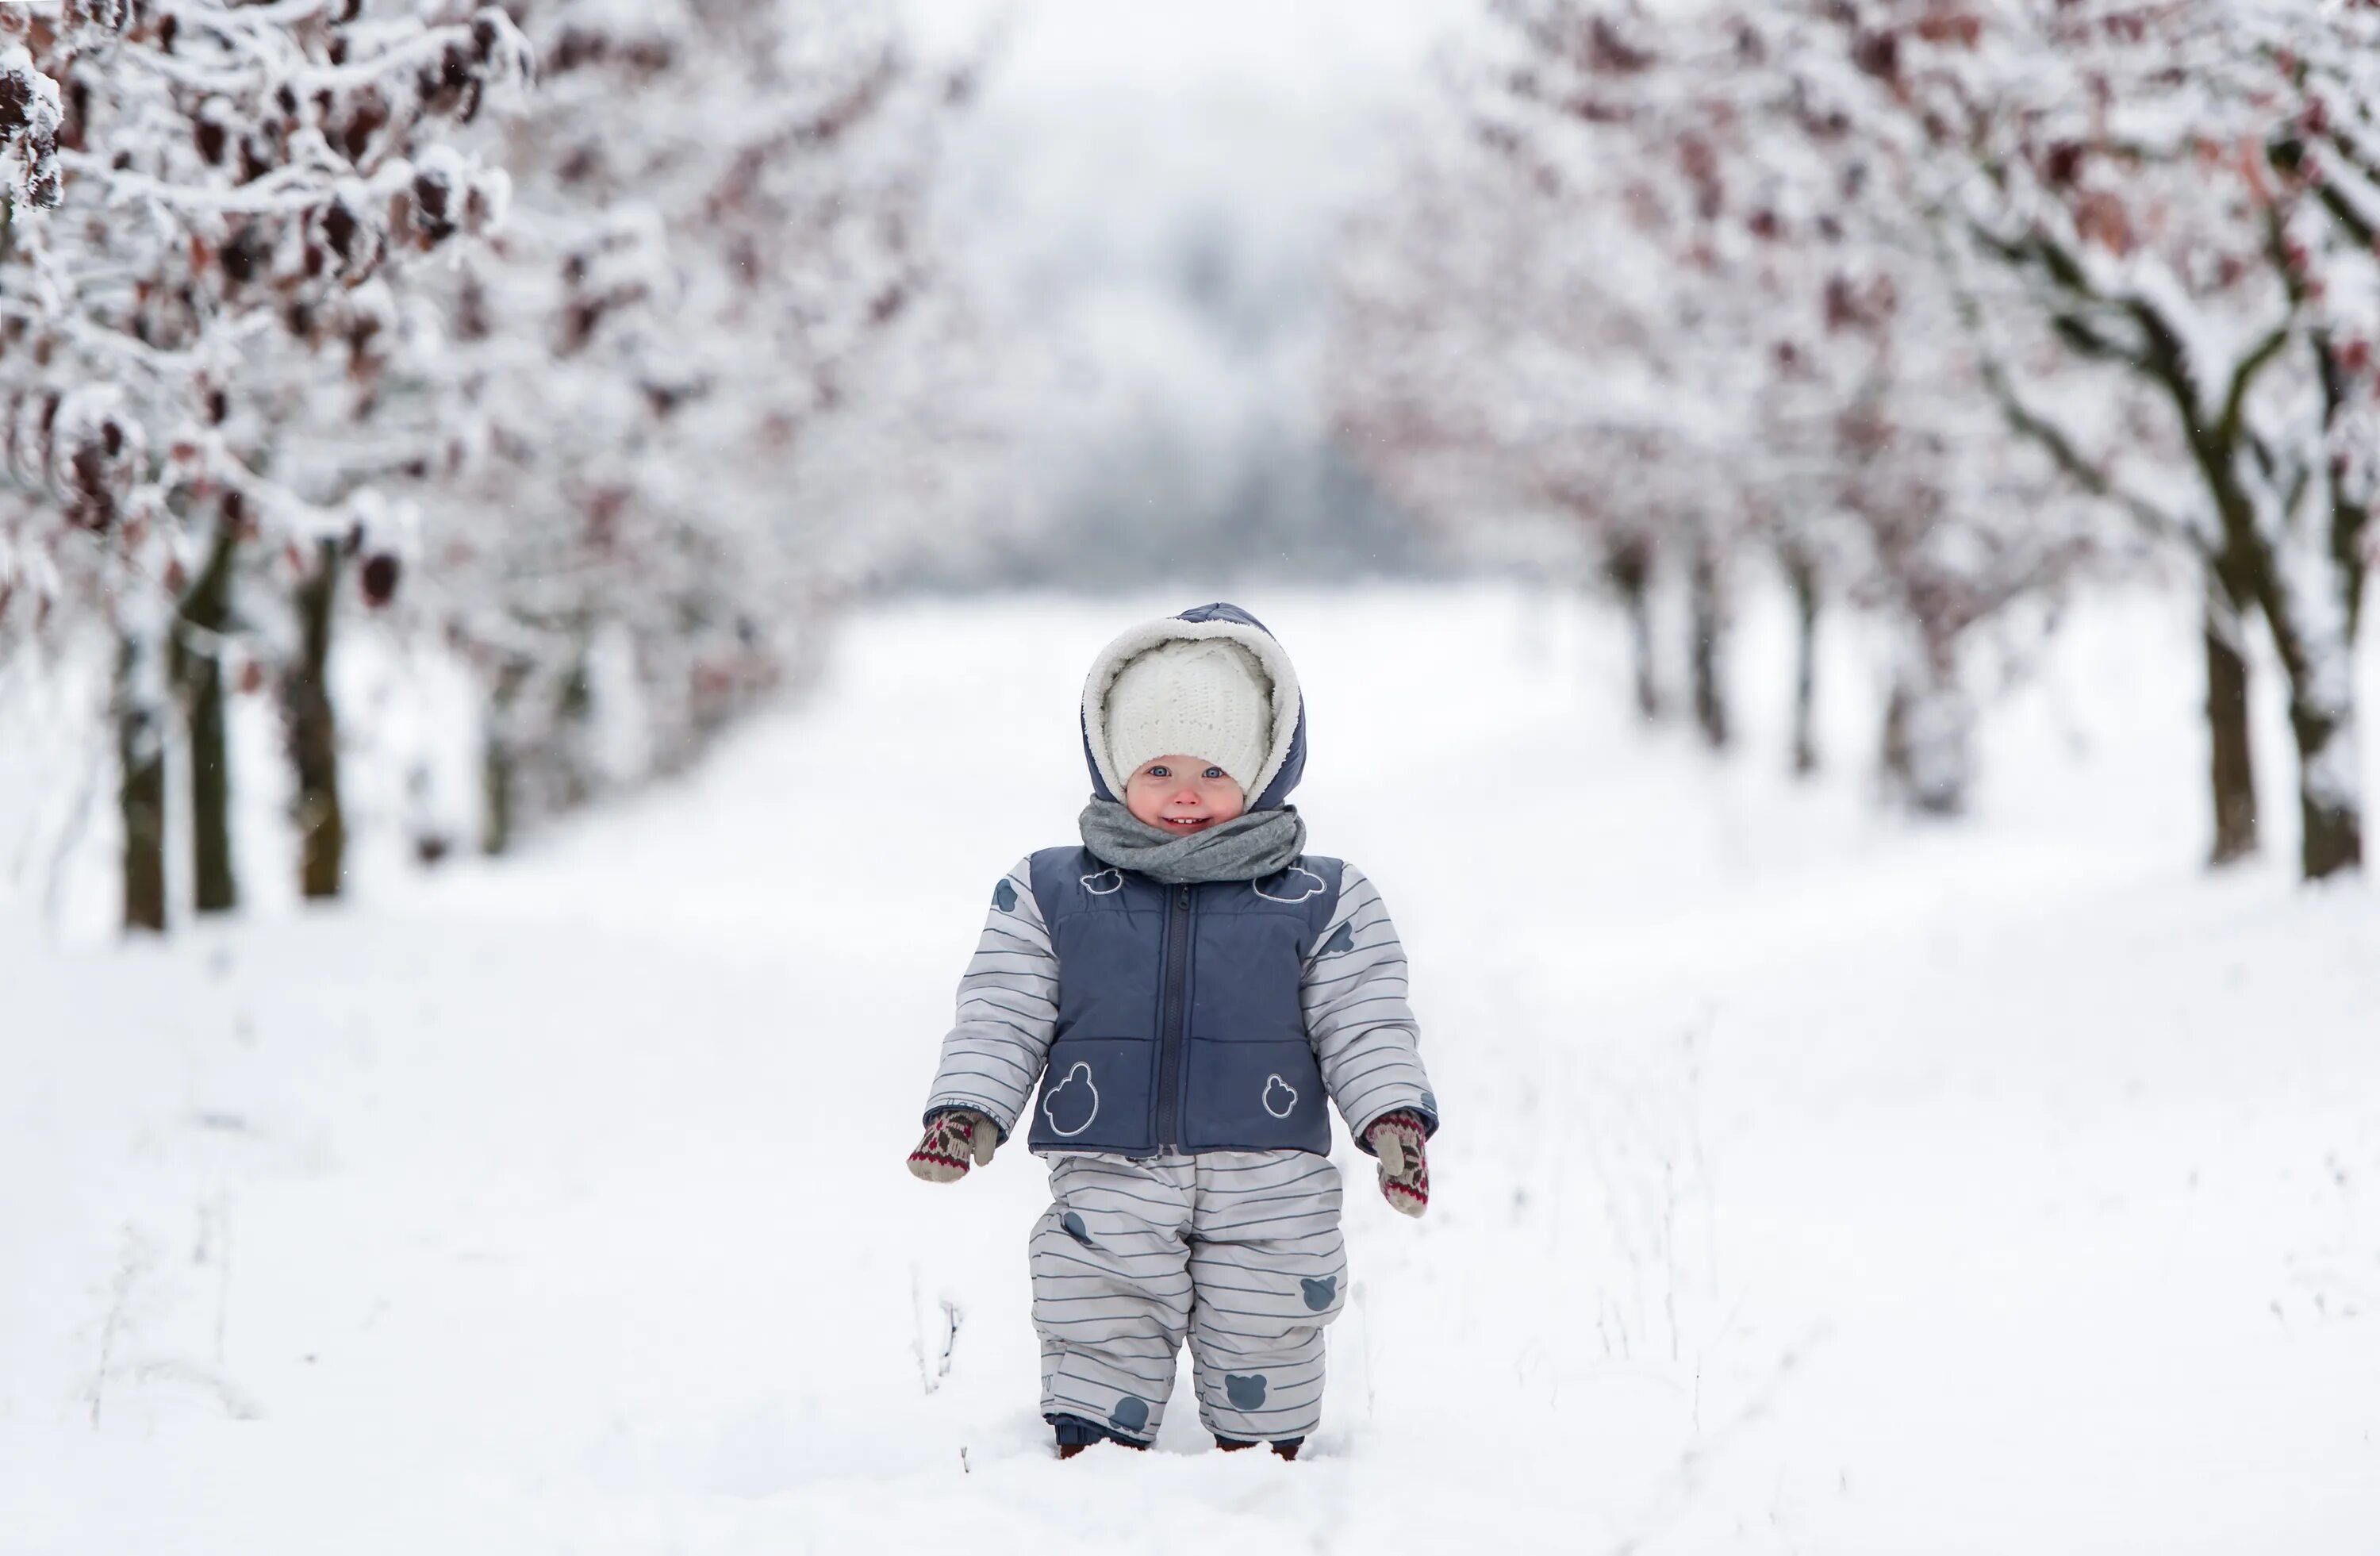 Прогулки с малышом. Малыш зимой на прогулке. Зима холод дети. Дети в снегу. Cold and snowy